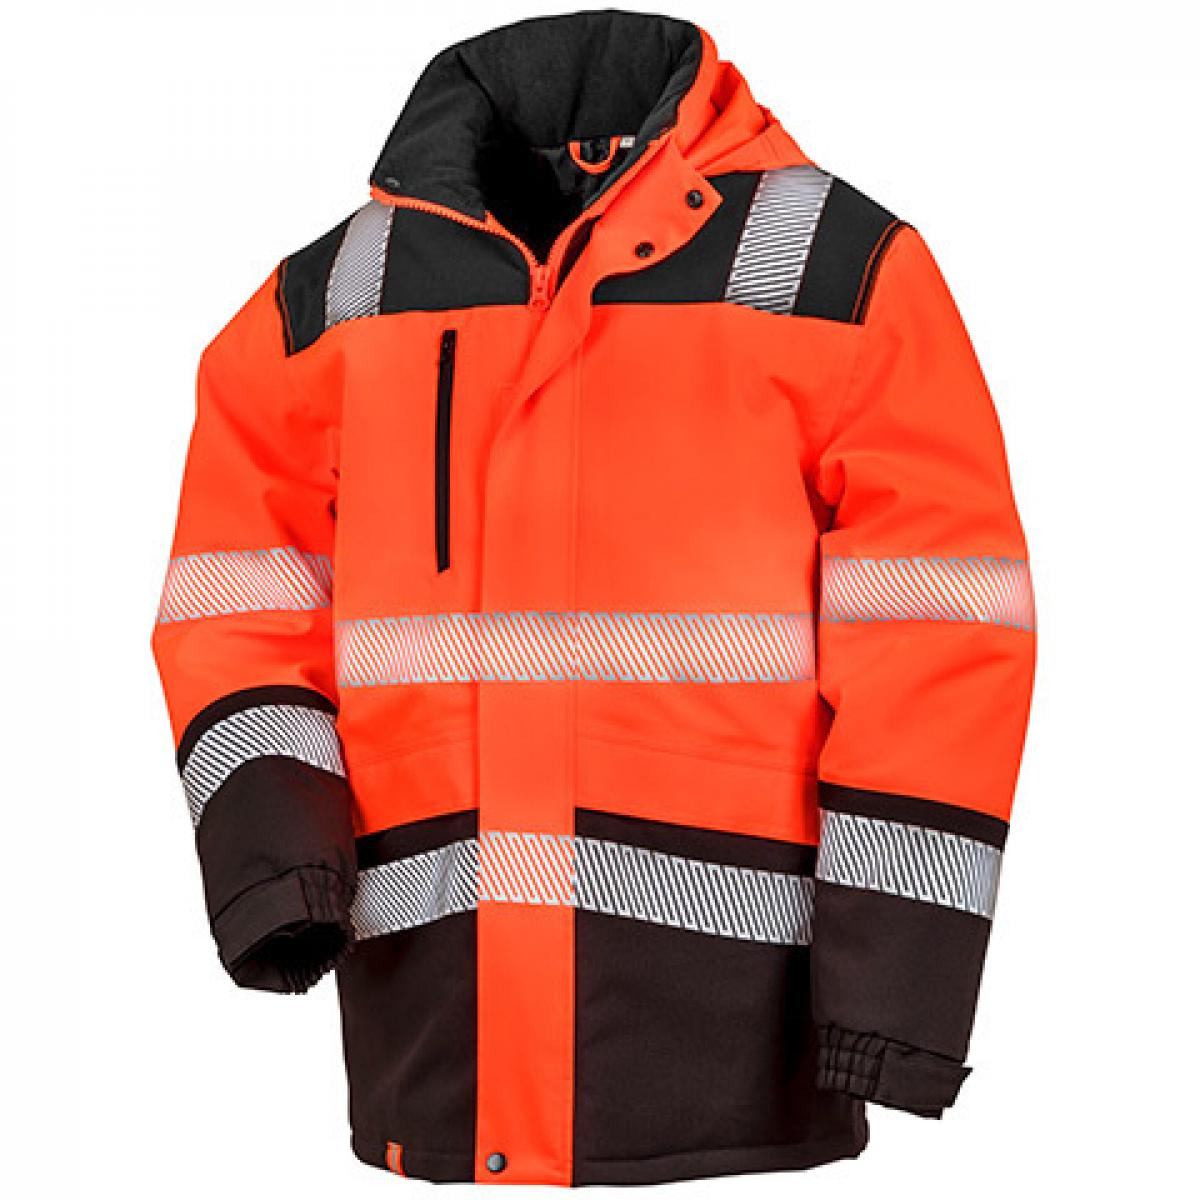 Hersteller: Safe-Guard Herstellernummer: R475X Artikelbezeichnung: Sicherheits Jacke Printable Waterproof Safety Coat Farbe: Fluorescent Orange/Black